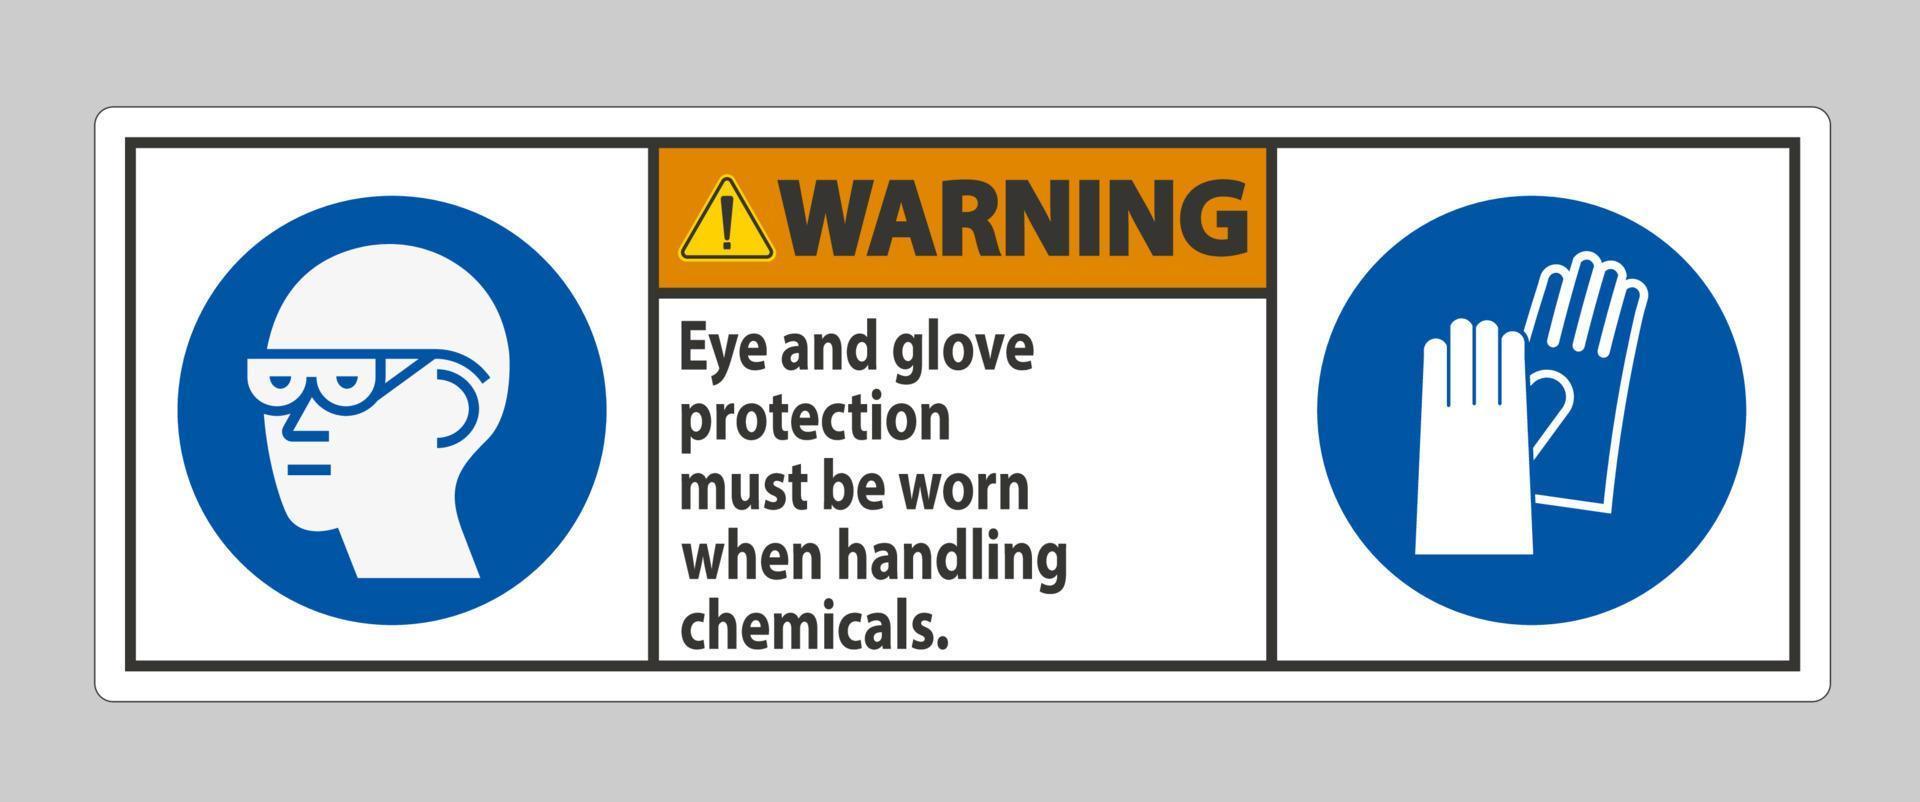 señal de advertencia debe usarse protección para los ojos y guantes al manipular productos químicos vector